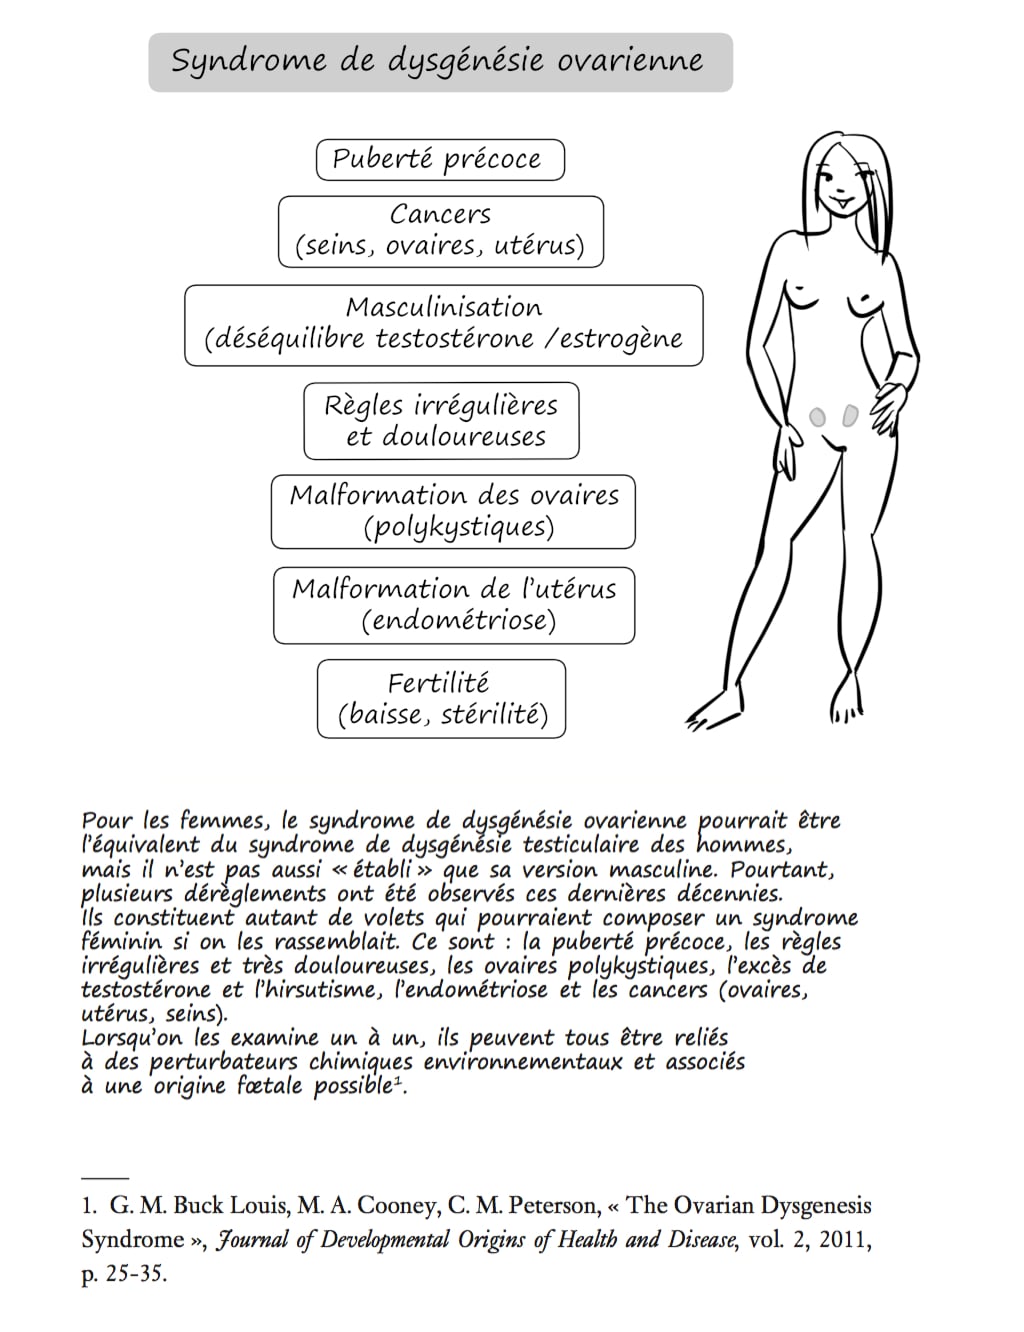 Syndrome de dysgénésie ovarienne - Le grand désordre hormonal - Illustration de Laurent Lalo